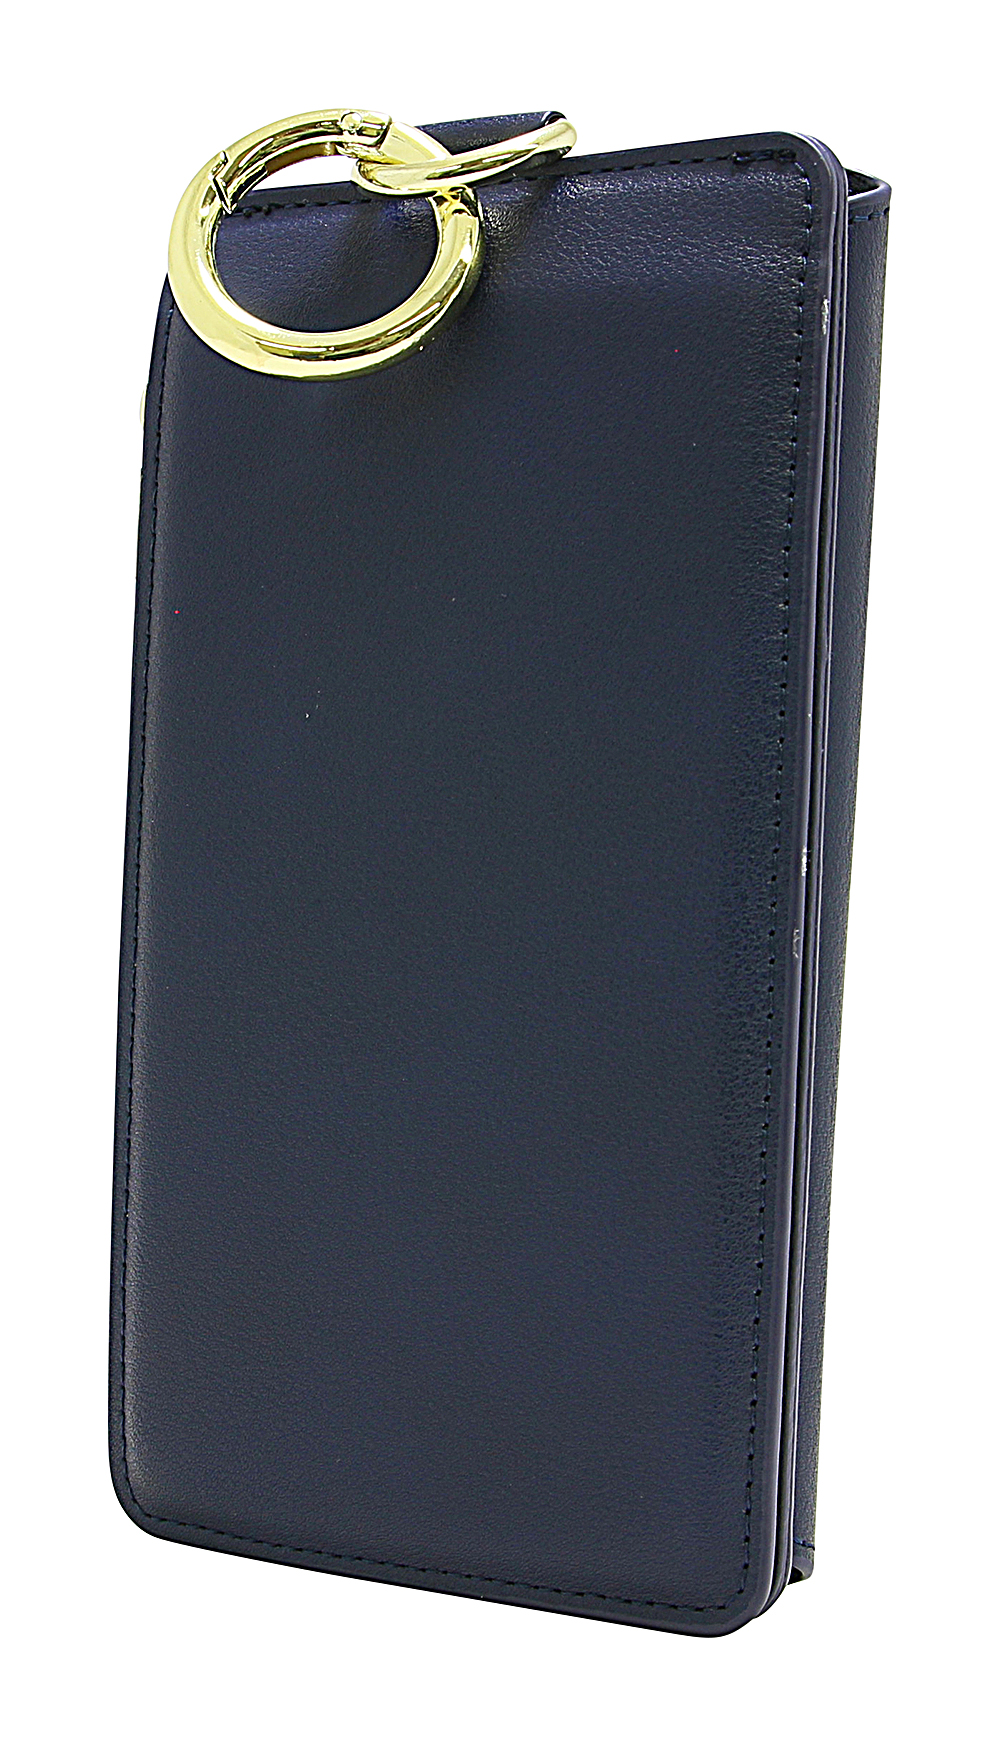 Multiwallet iPhone SE (2nd Generation)